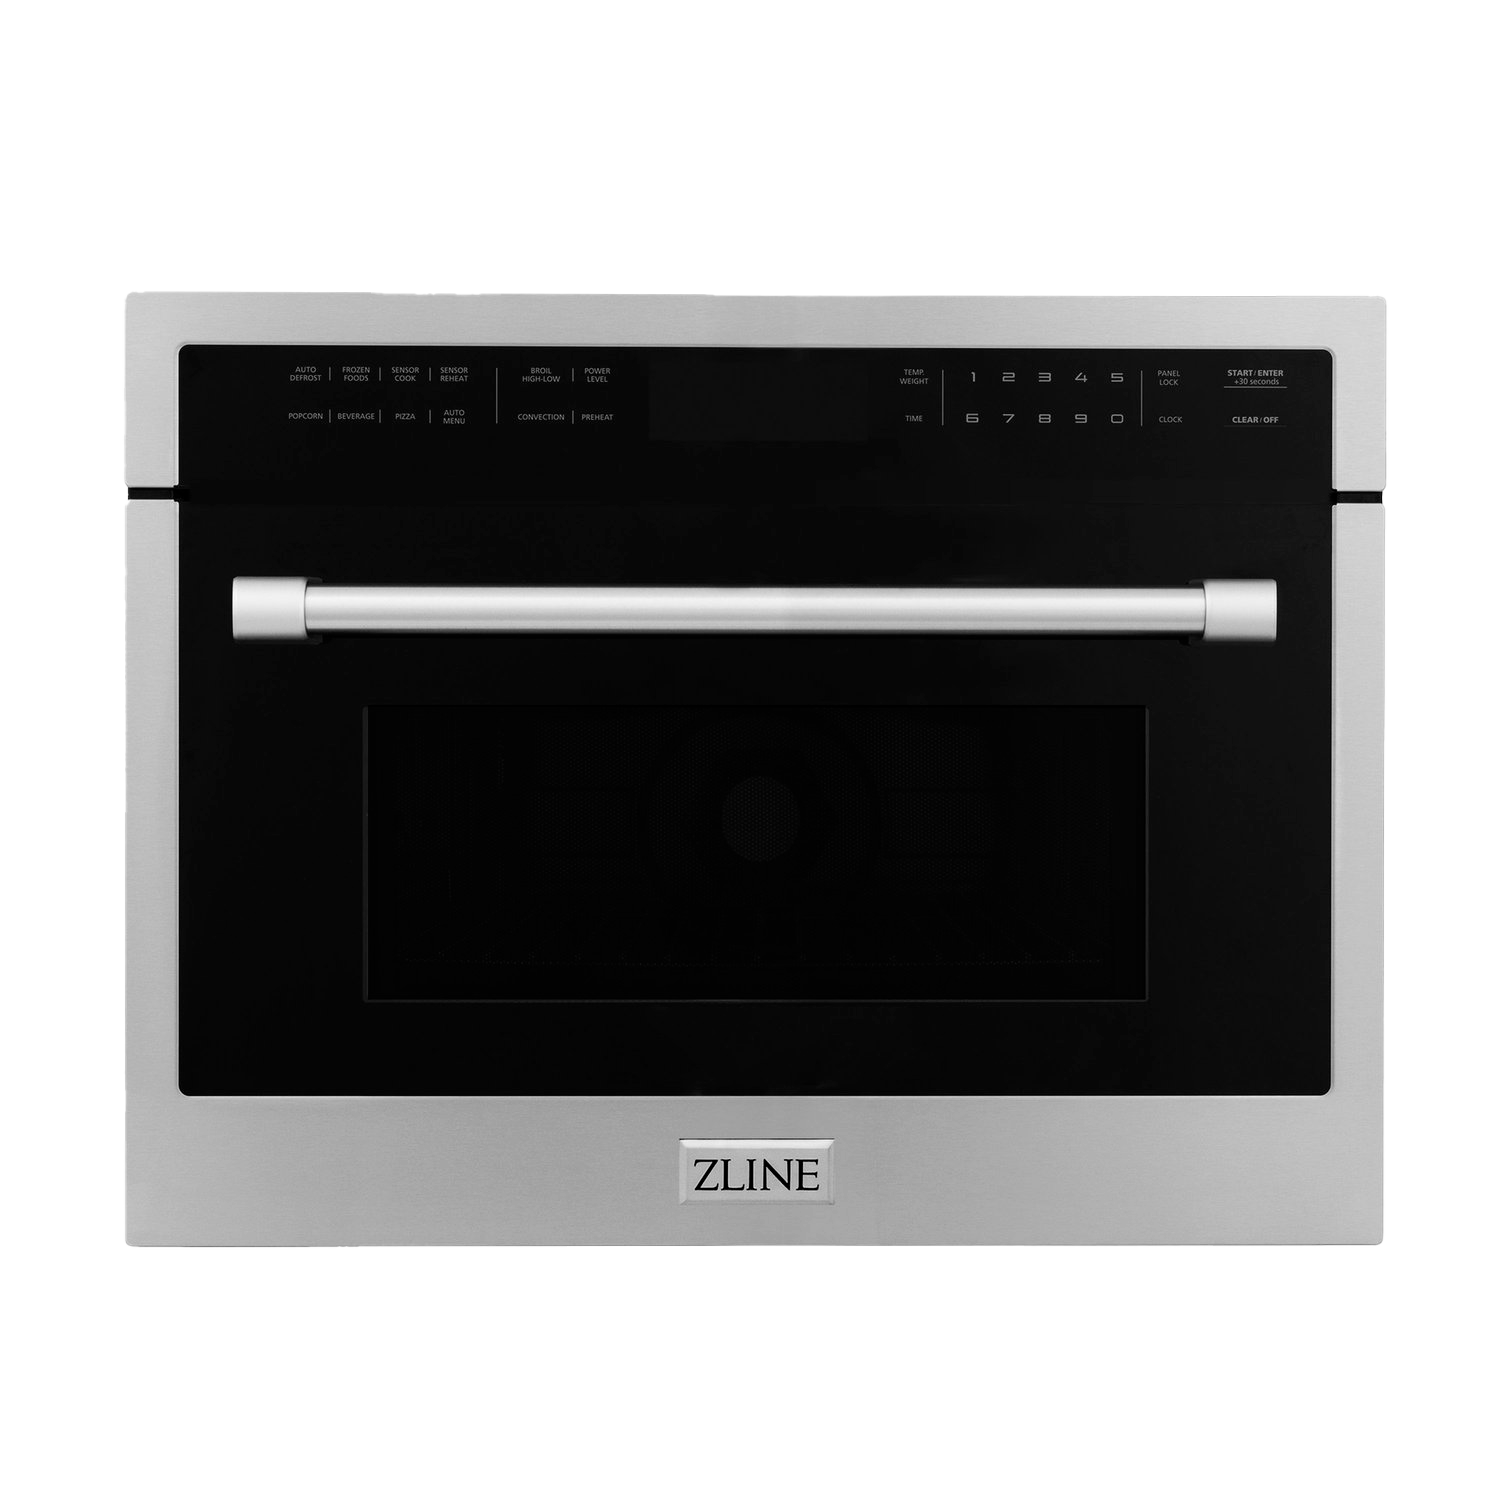 ZLINE built-in microwave oven